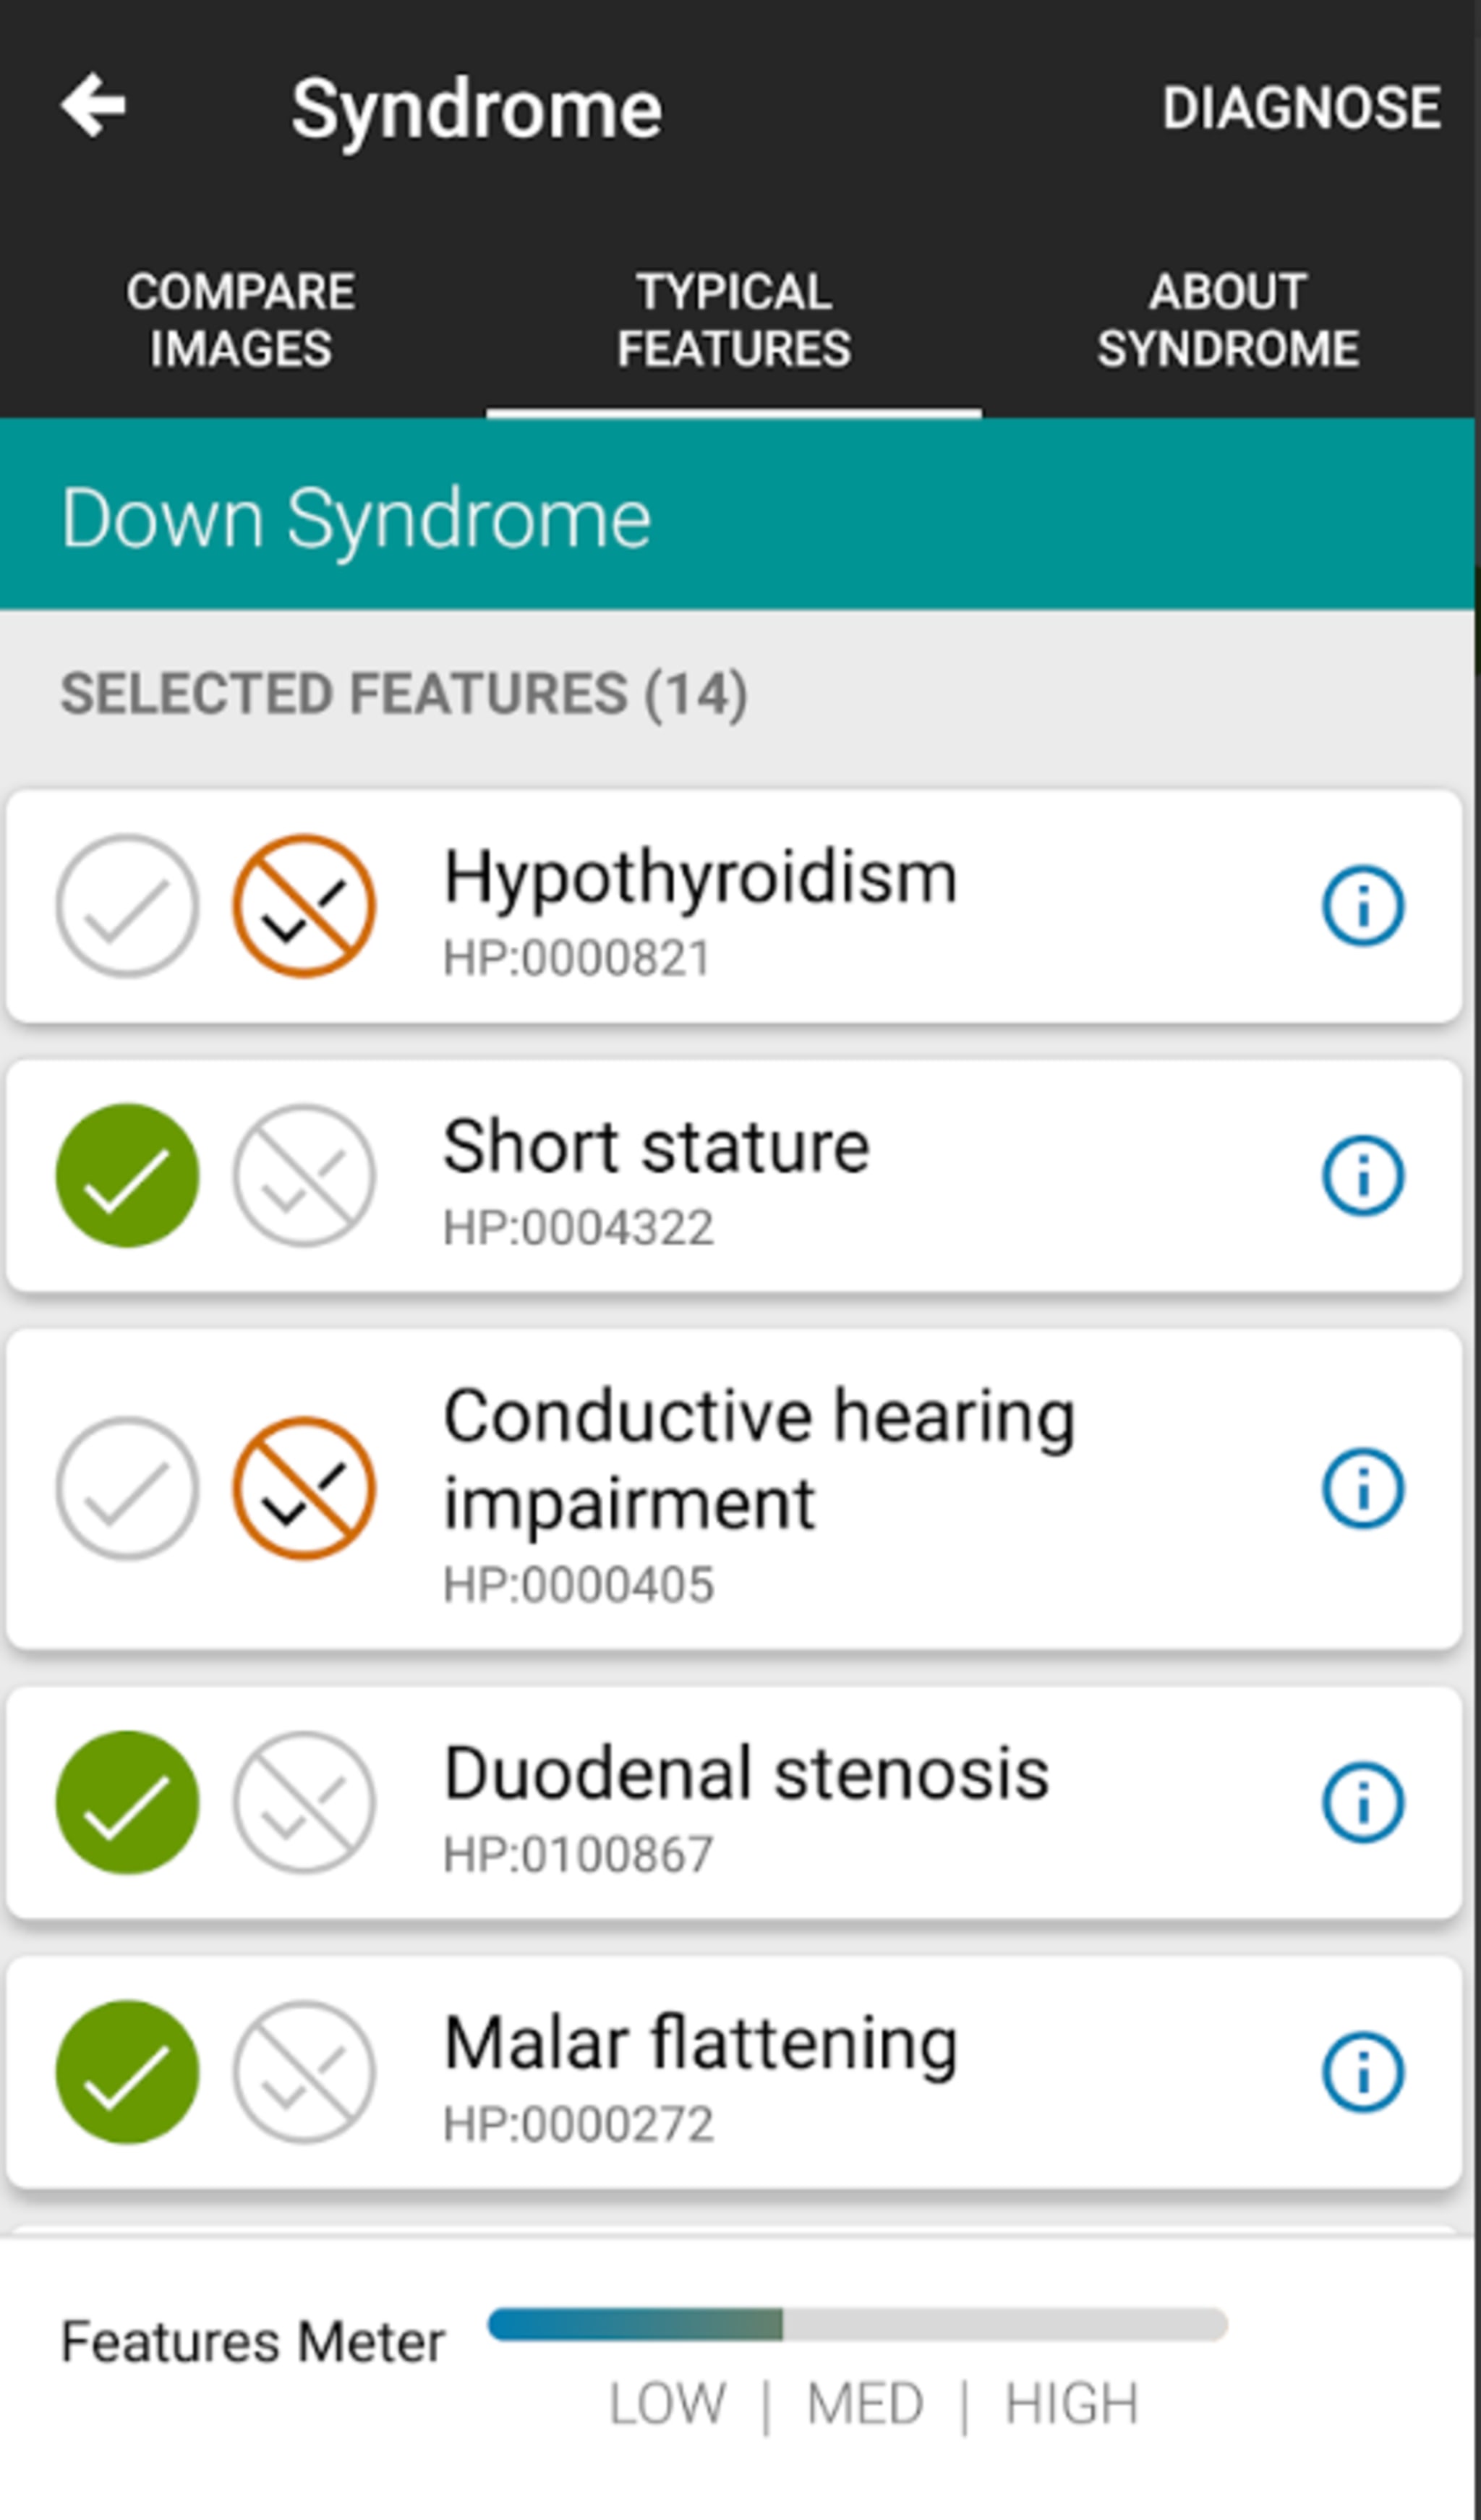 Die App frägt nach typischen Merkmalen einer vermuteten Erbkrankheit bei dem Patienten. 